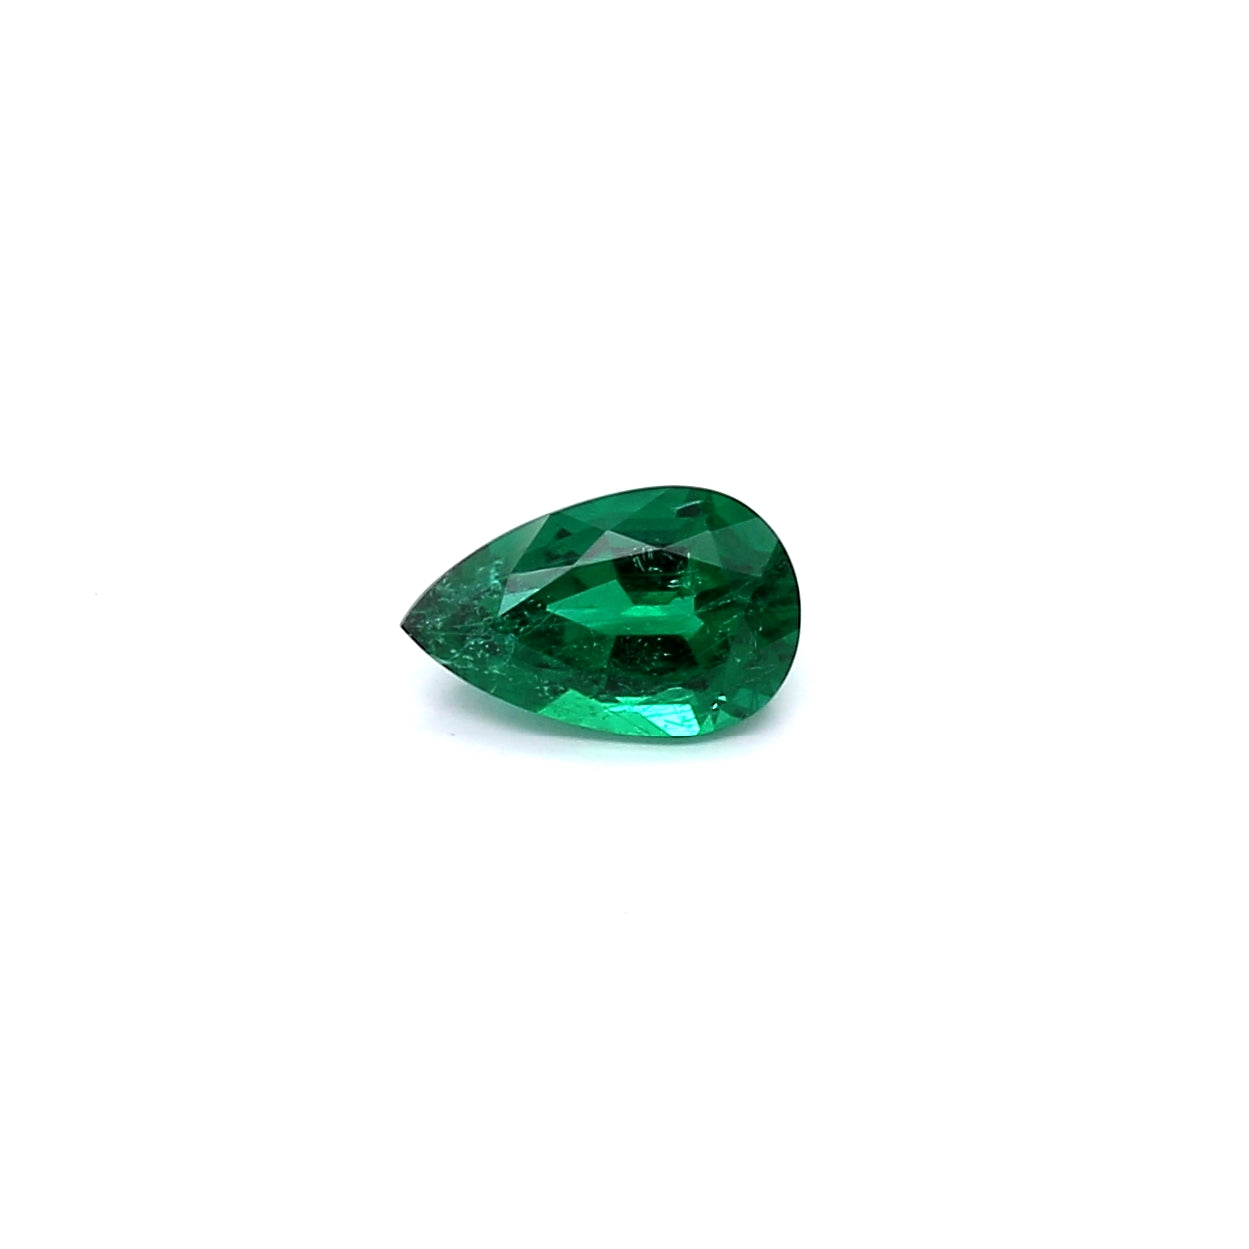 0.51ct Pear Shape Emerald, Minor Oil, Zimbabwe - 6.99 x 4.41 x 3.14mm